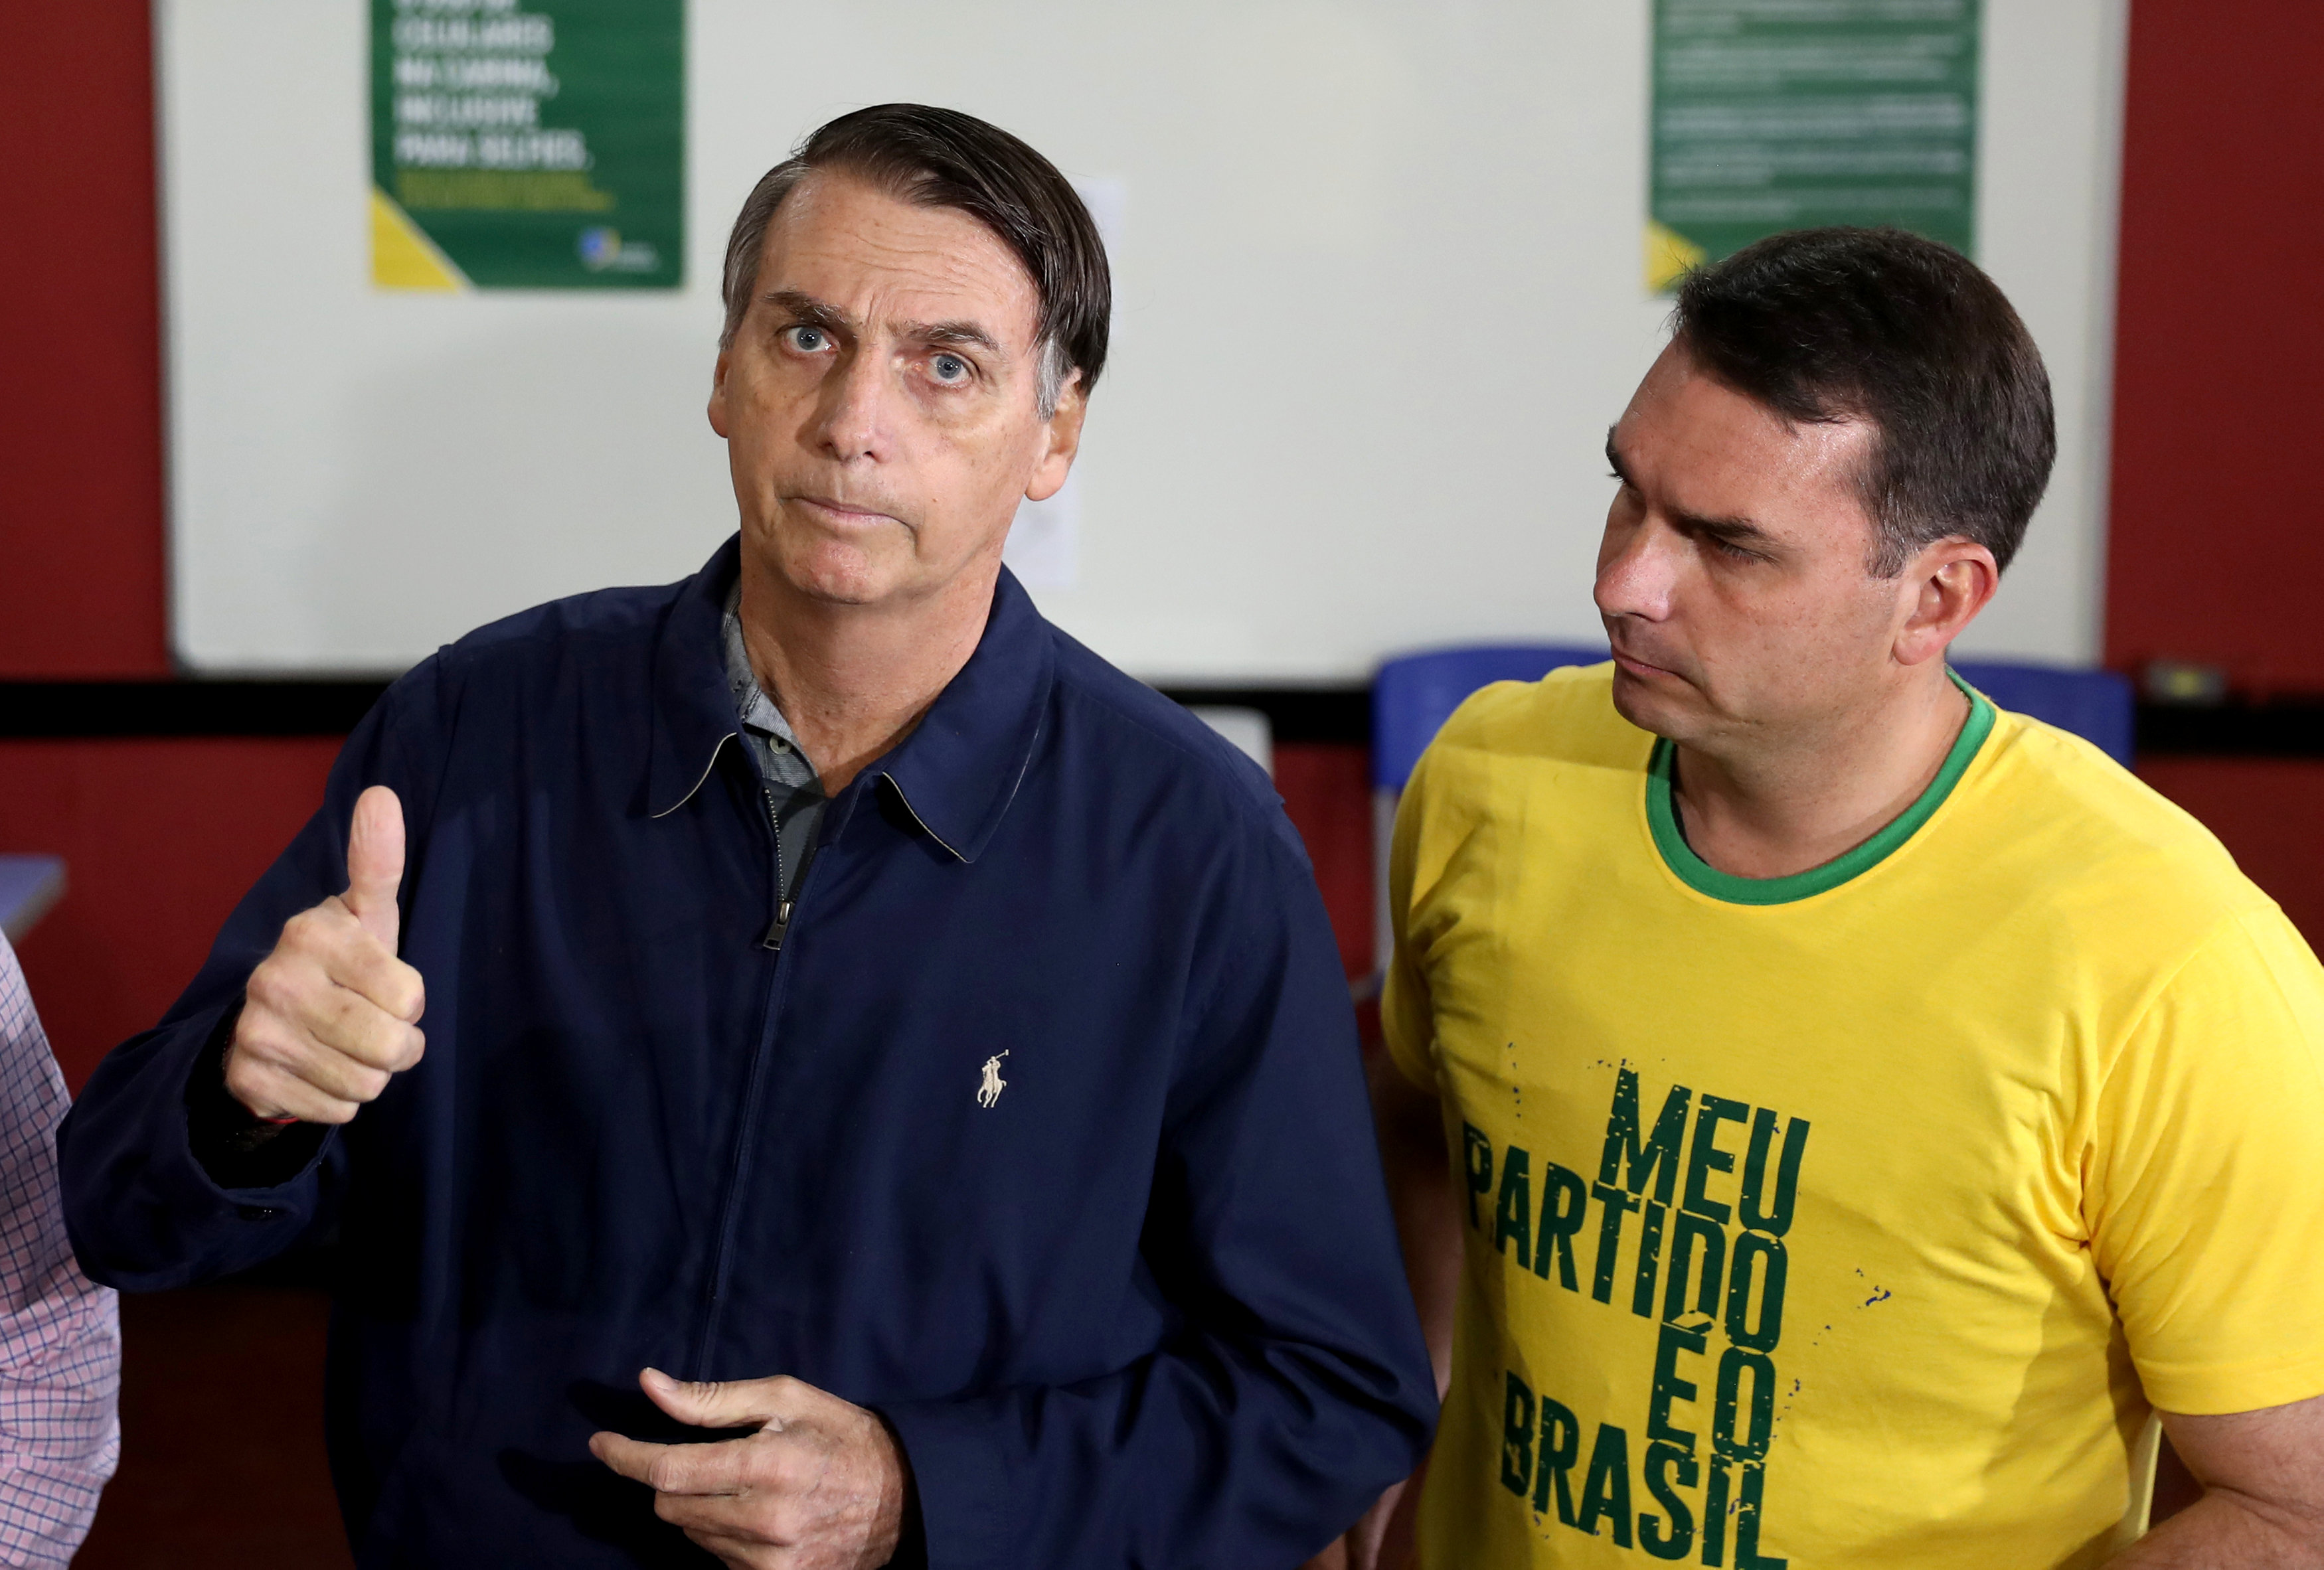 المرشح البرازيلى هو الأكثر حظا بين المرشحين الأخرين